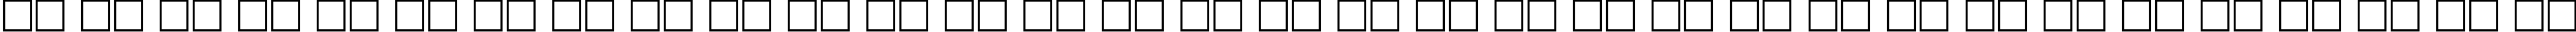 Пример написания русского алфавита шрифтом FreeSetCTT Bold